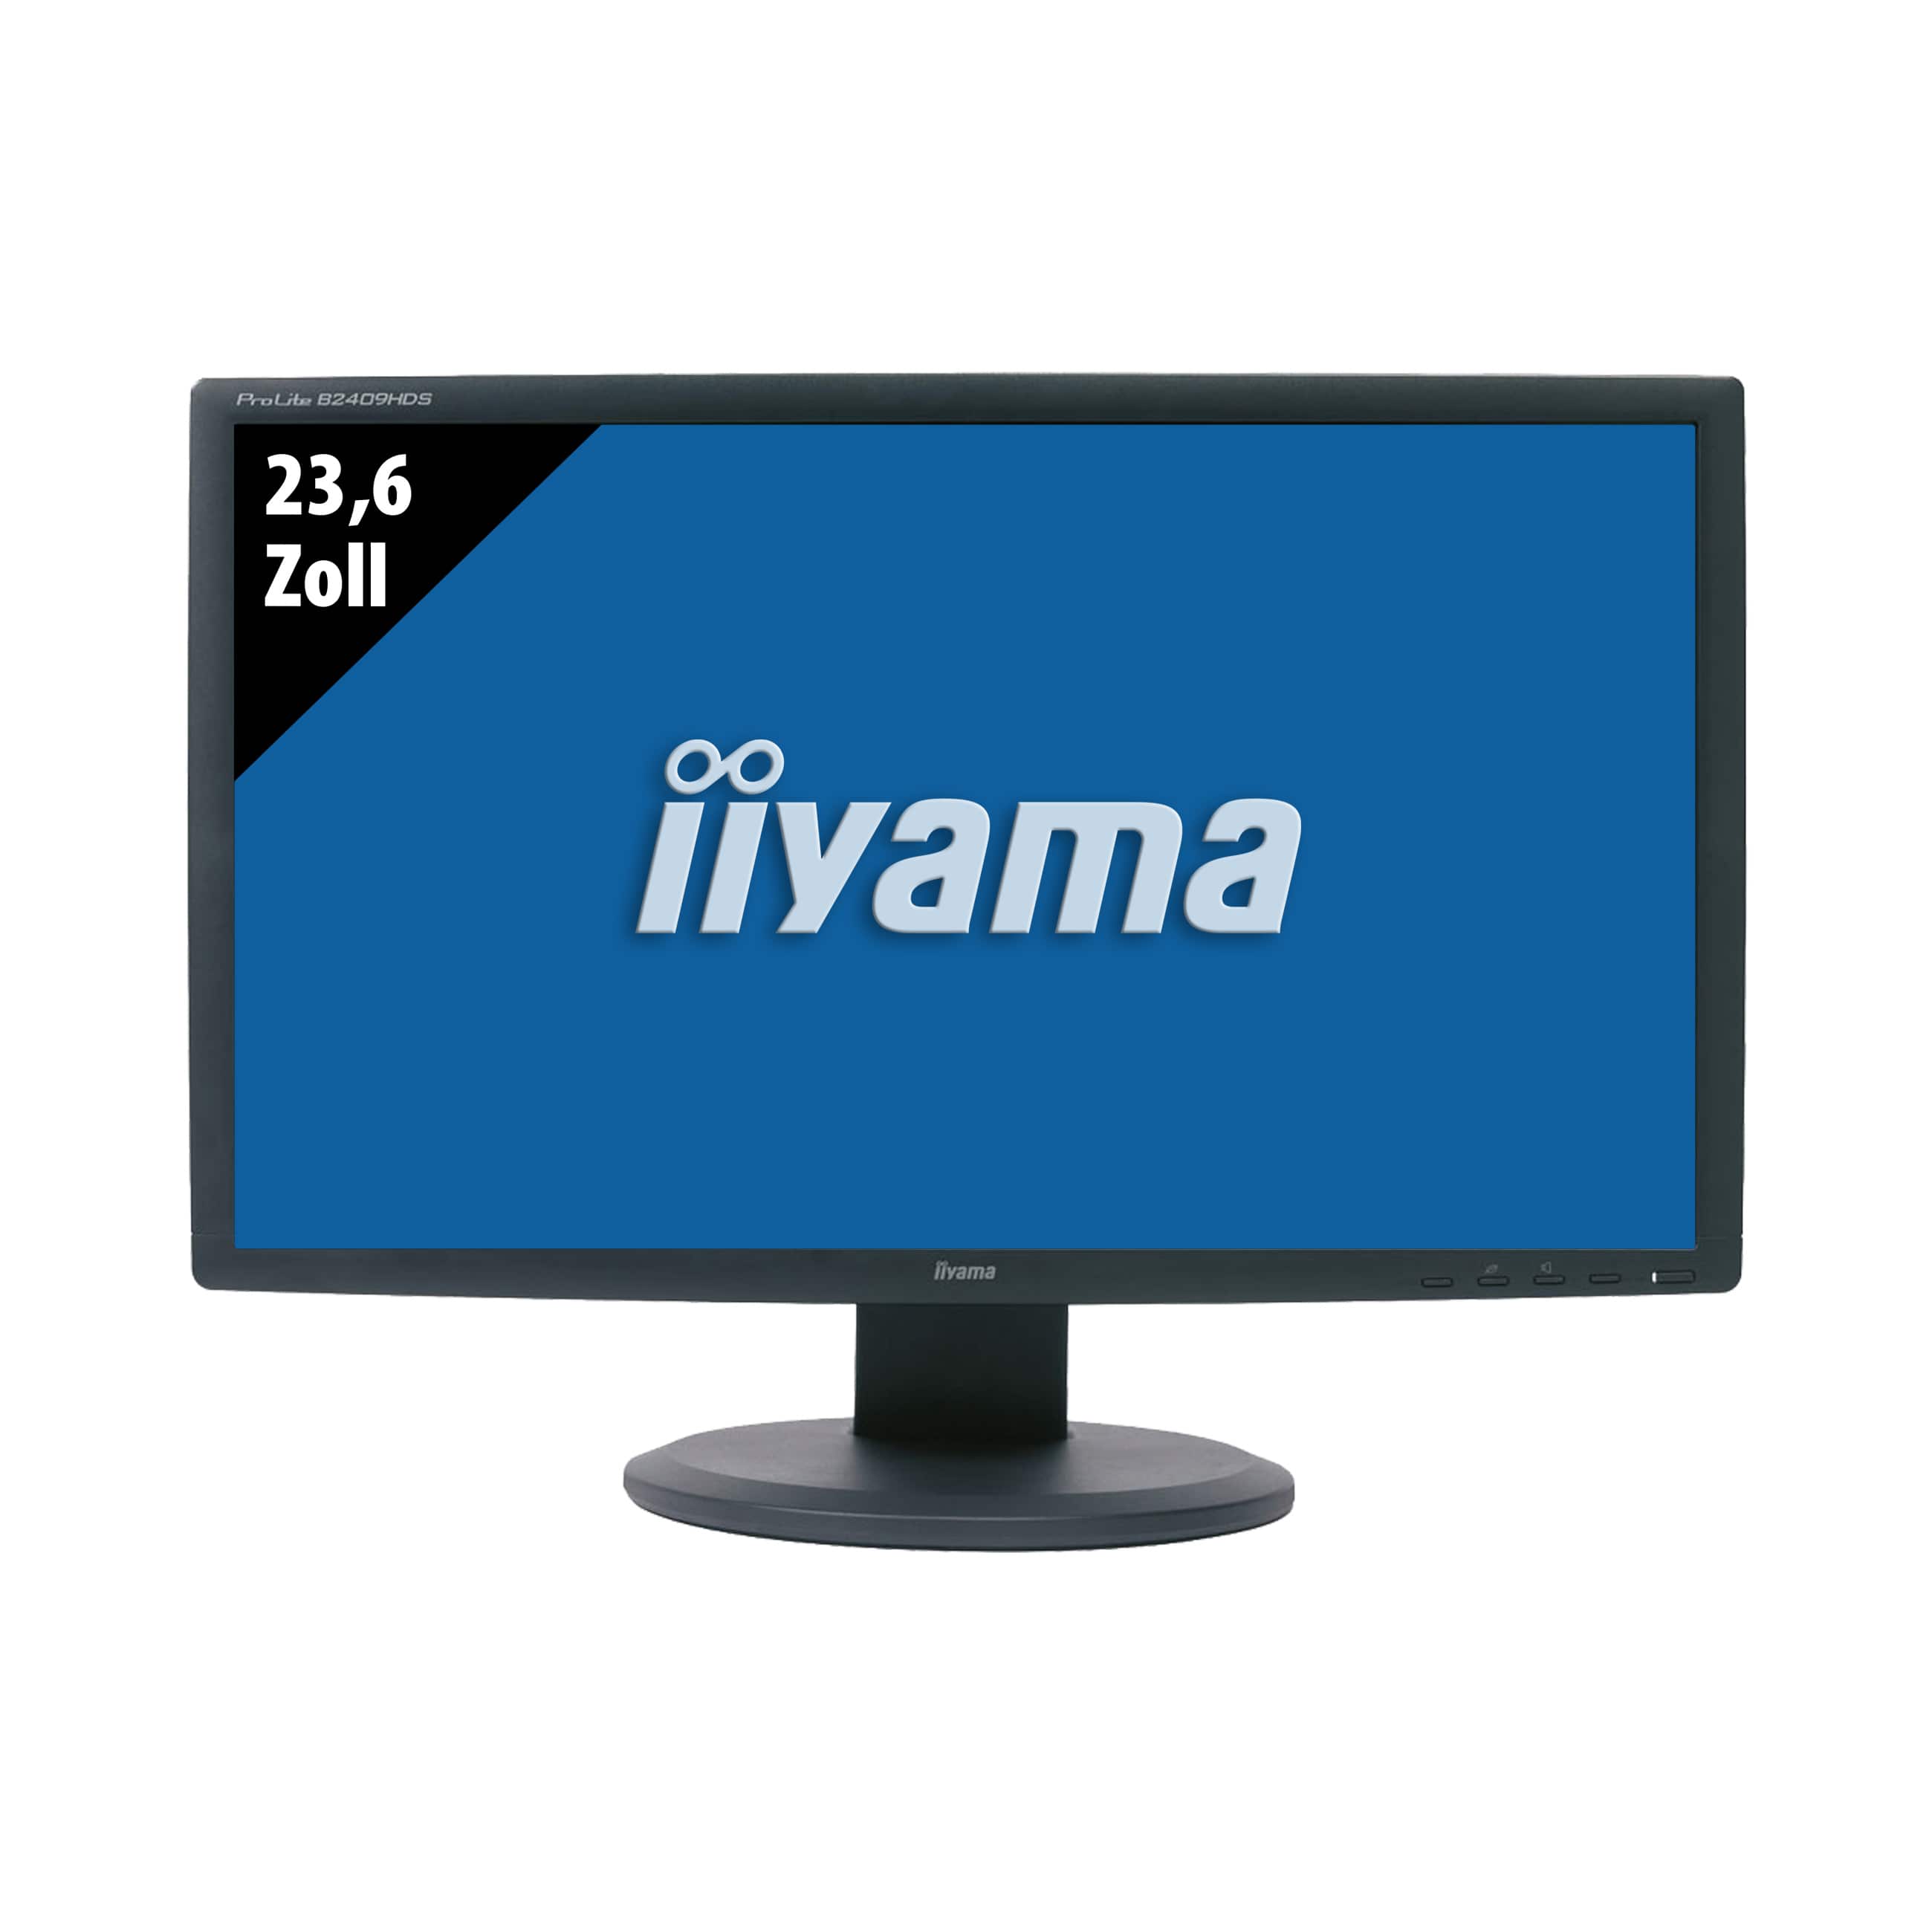 Iiyama Pro Lite B2409HDS - 1920 x 1080 - FHD